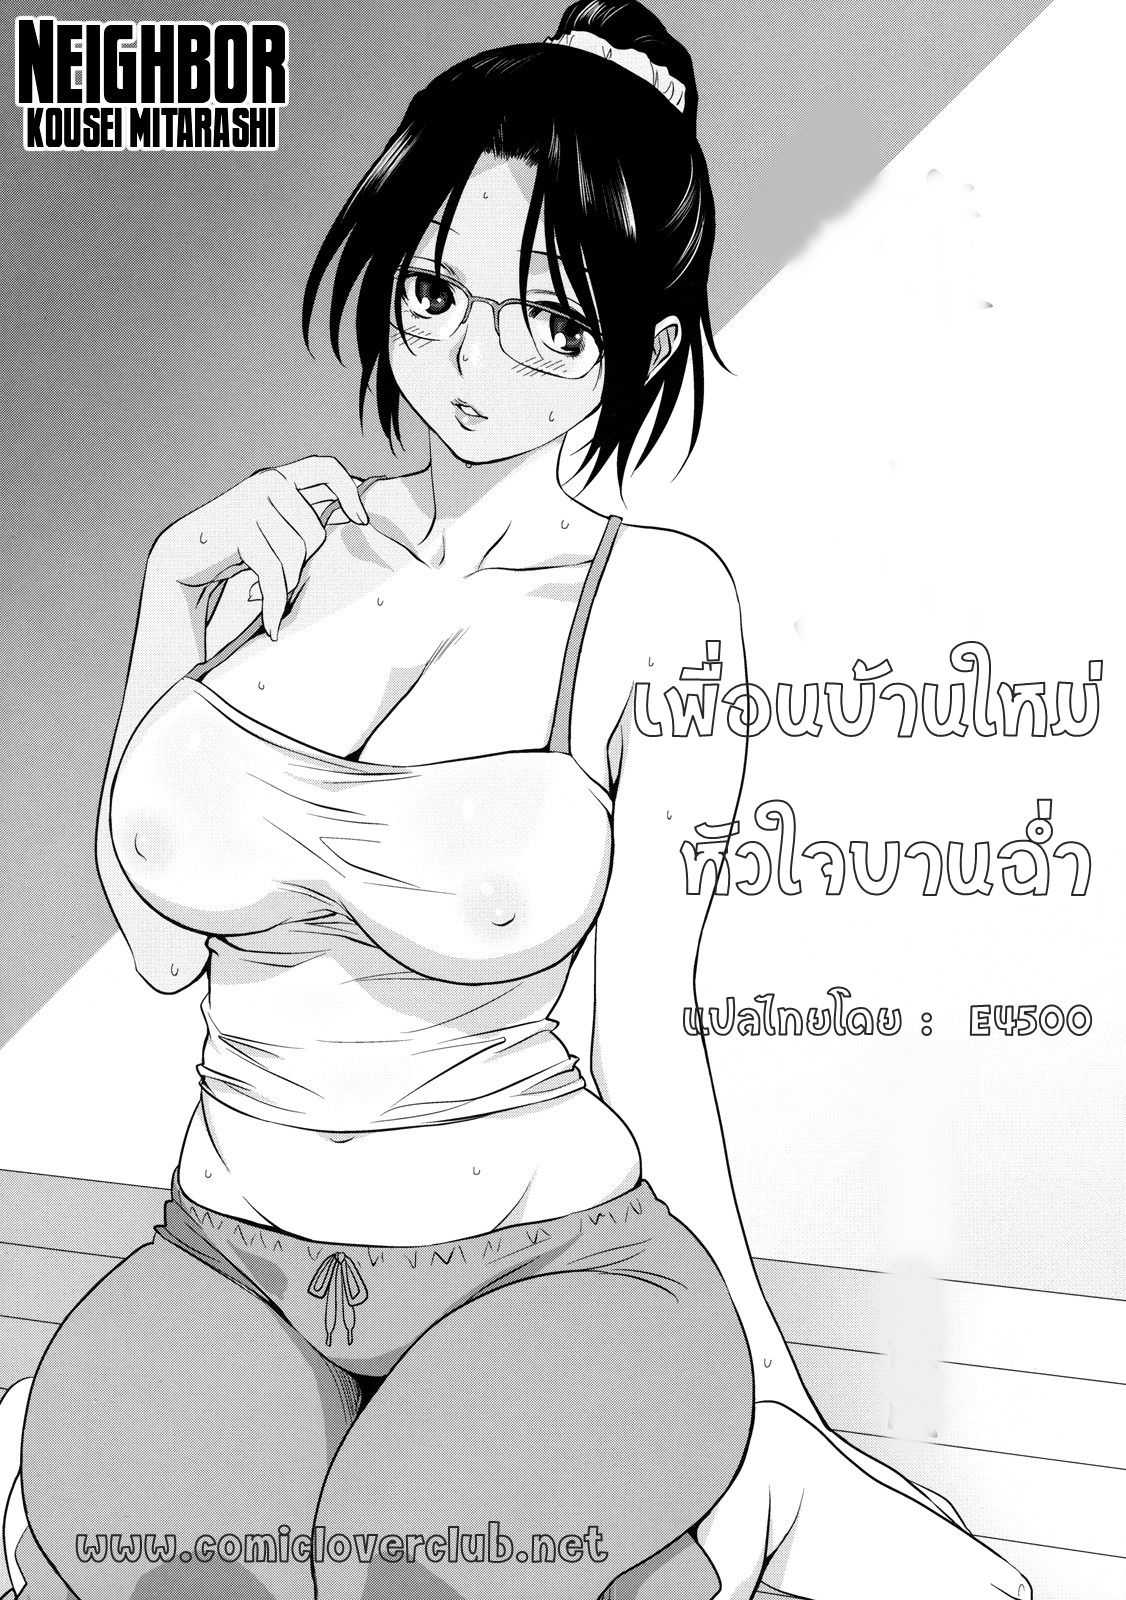 [Mitarashi Kousei] Rinjin | Neighbor (Shinzui Shinseikatsu Ver. Vol. 4) [Thai ภาษาไทย] [E4500] 1